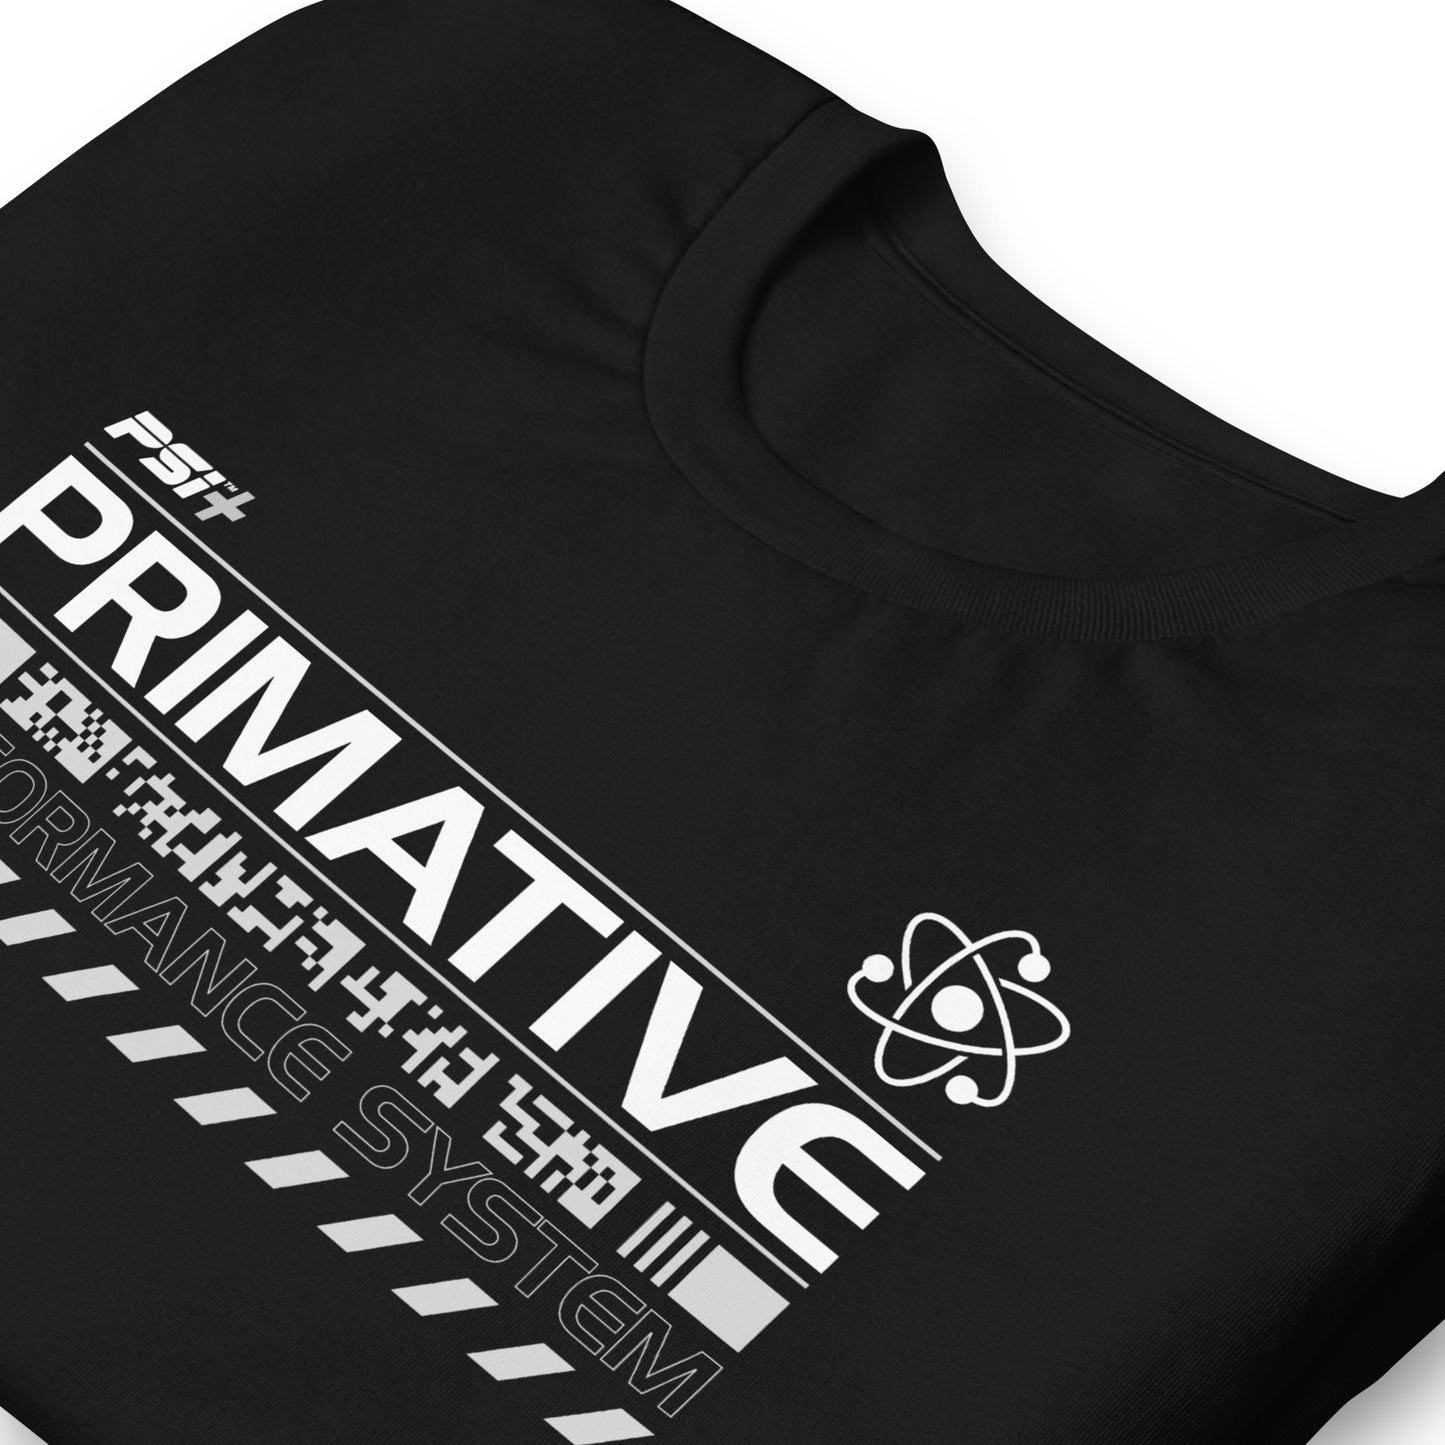 PSI Primative (Black)